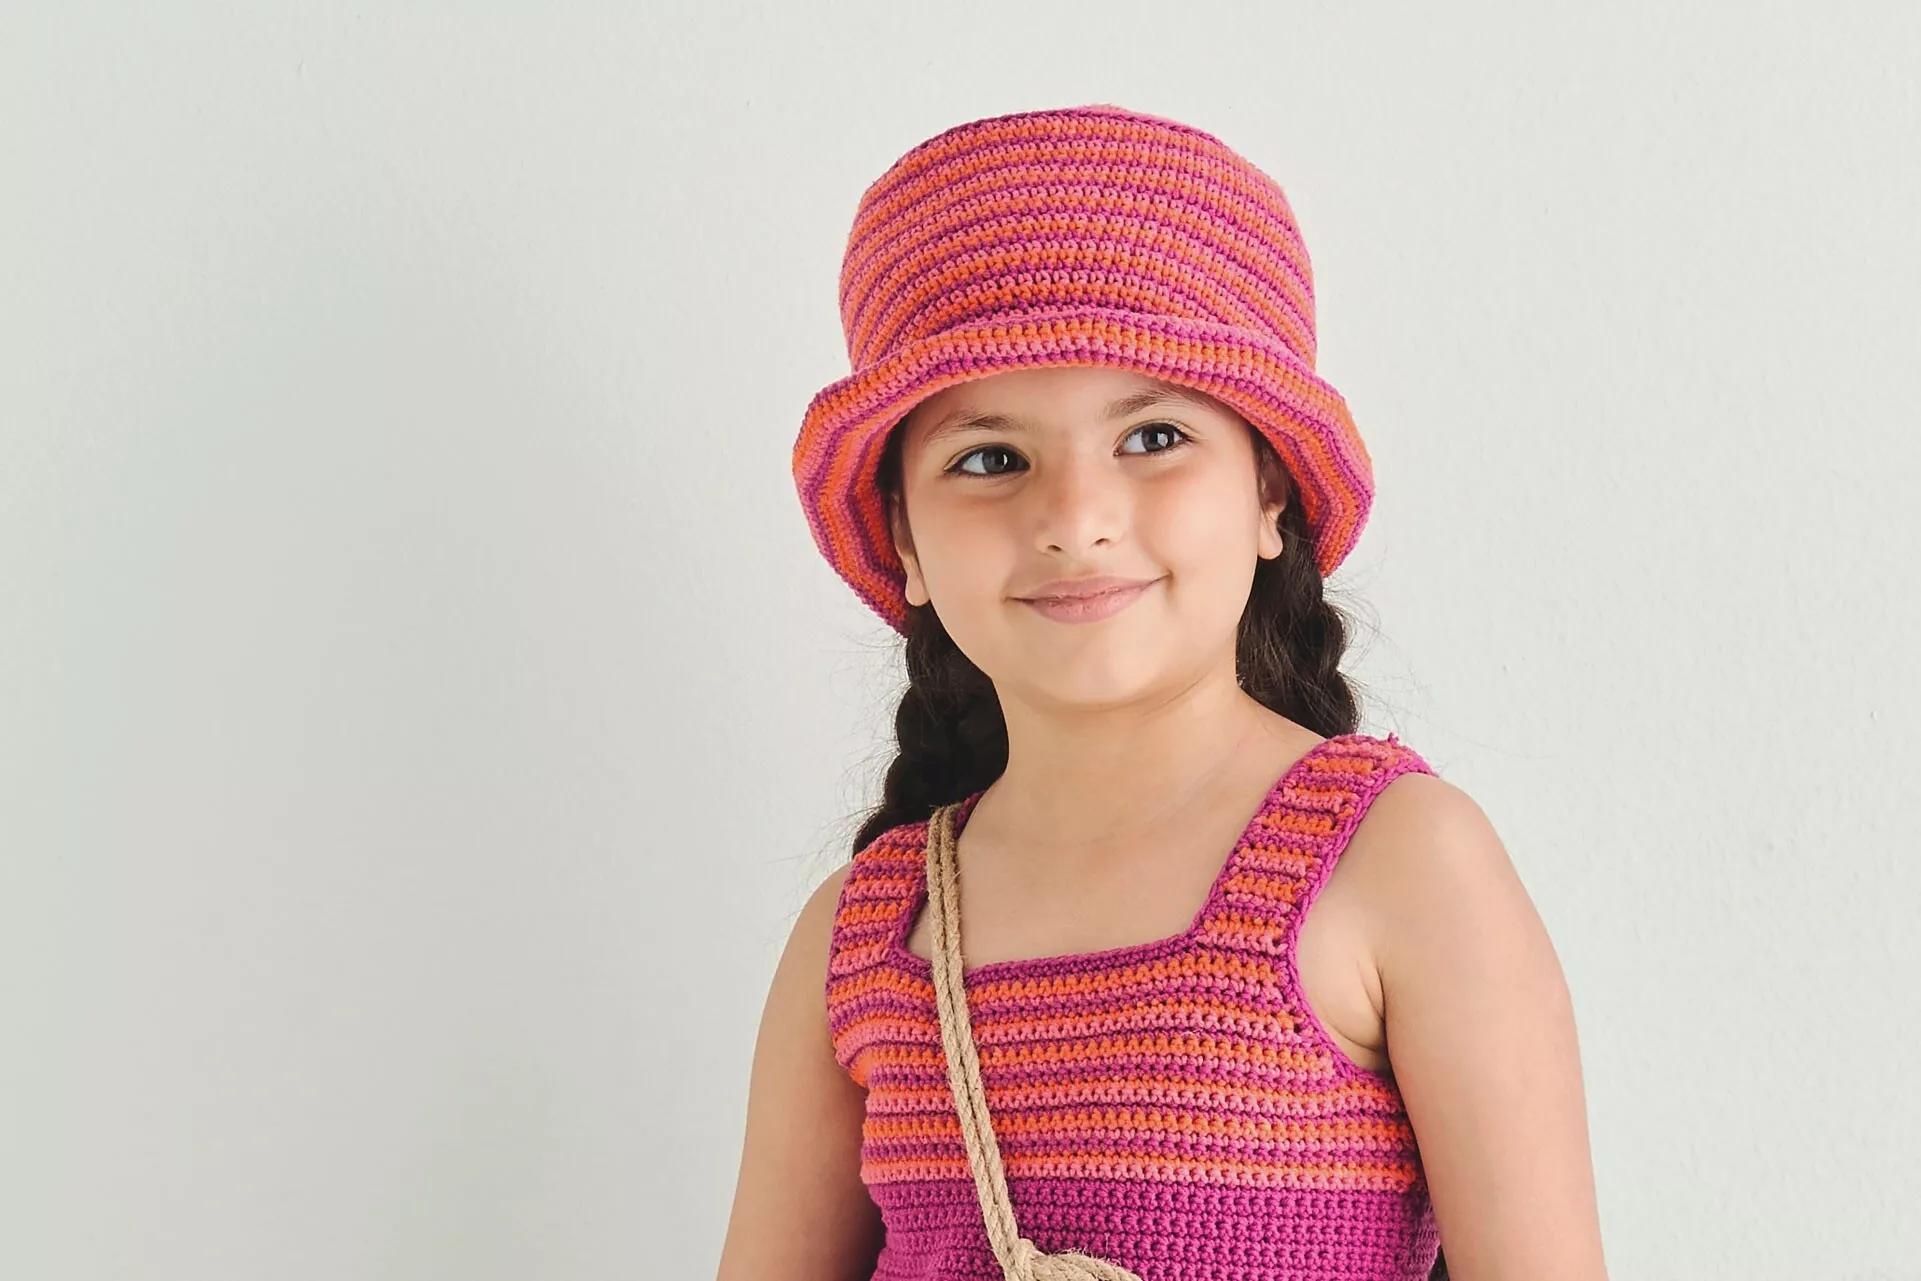 Lasten virkattu hattu tehdään kiinteillä silmukoilla puuvillasekoitelangasta.